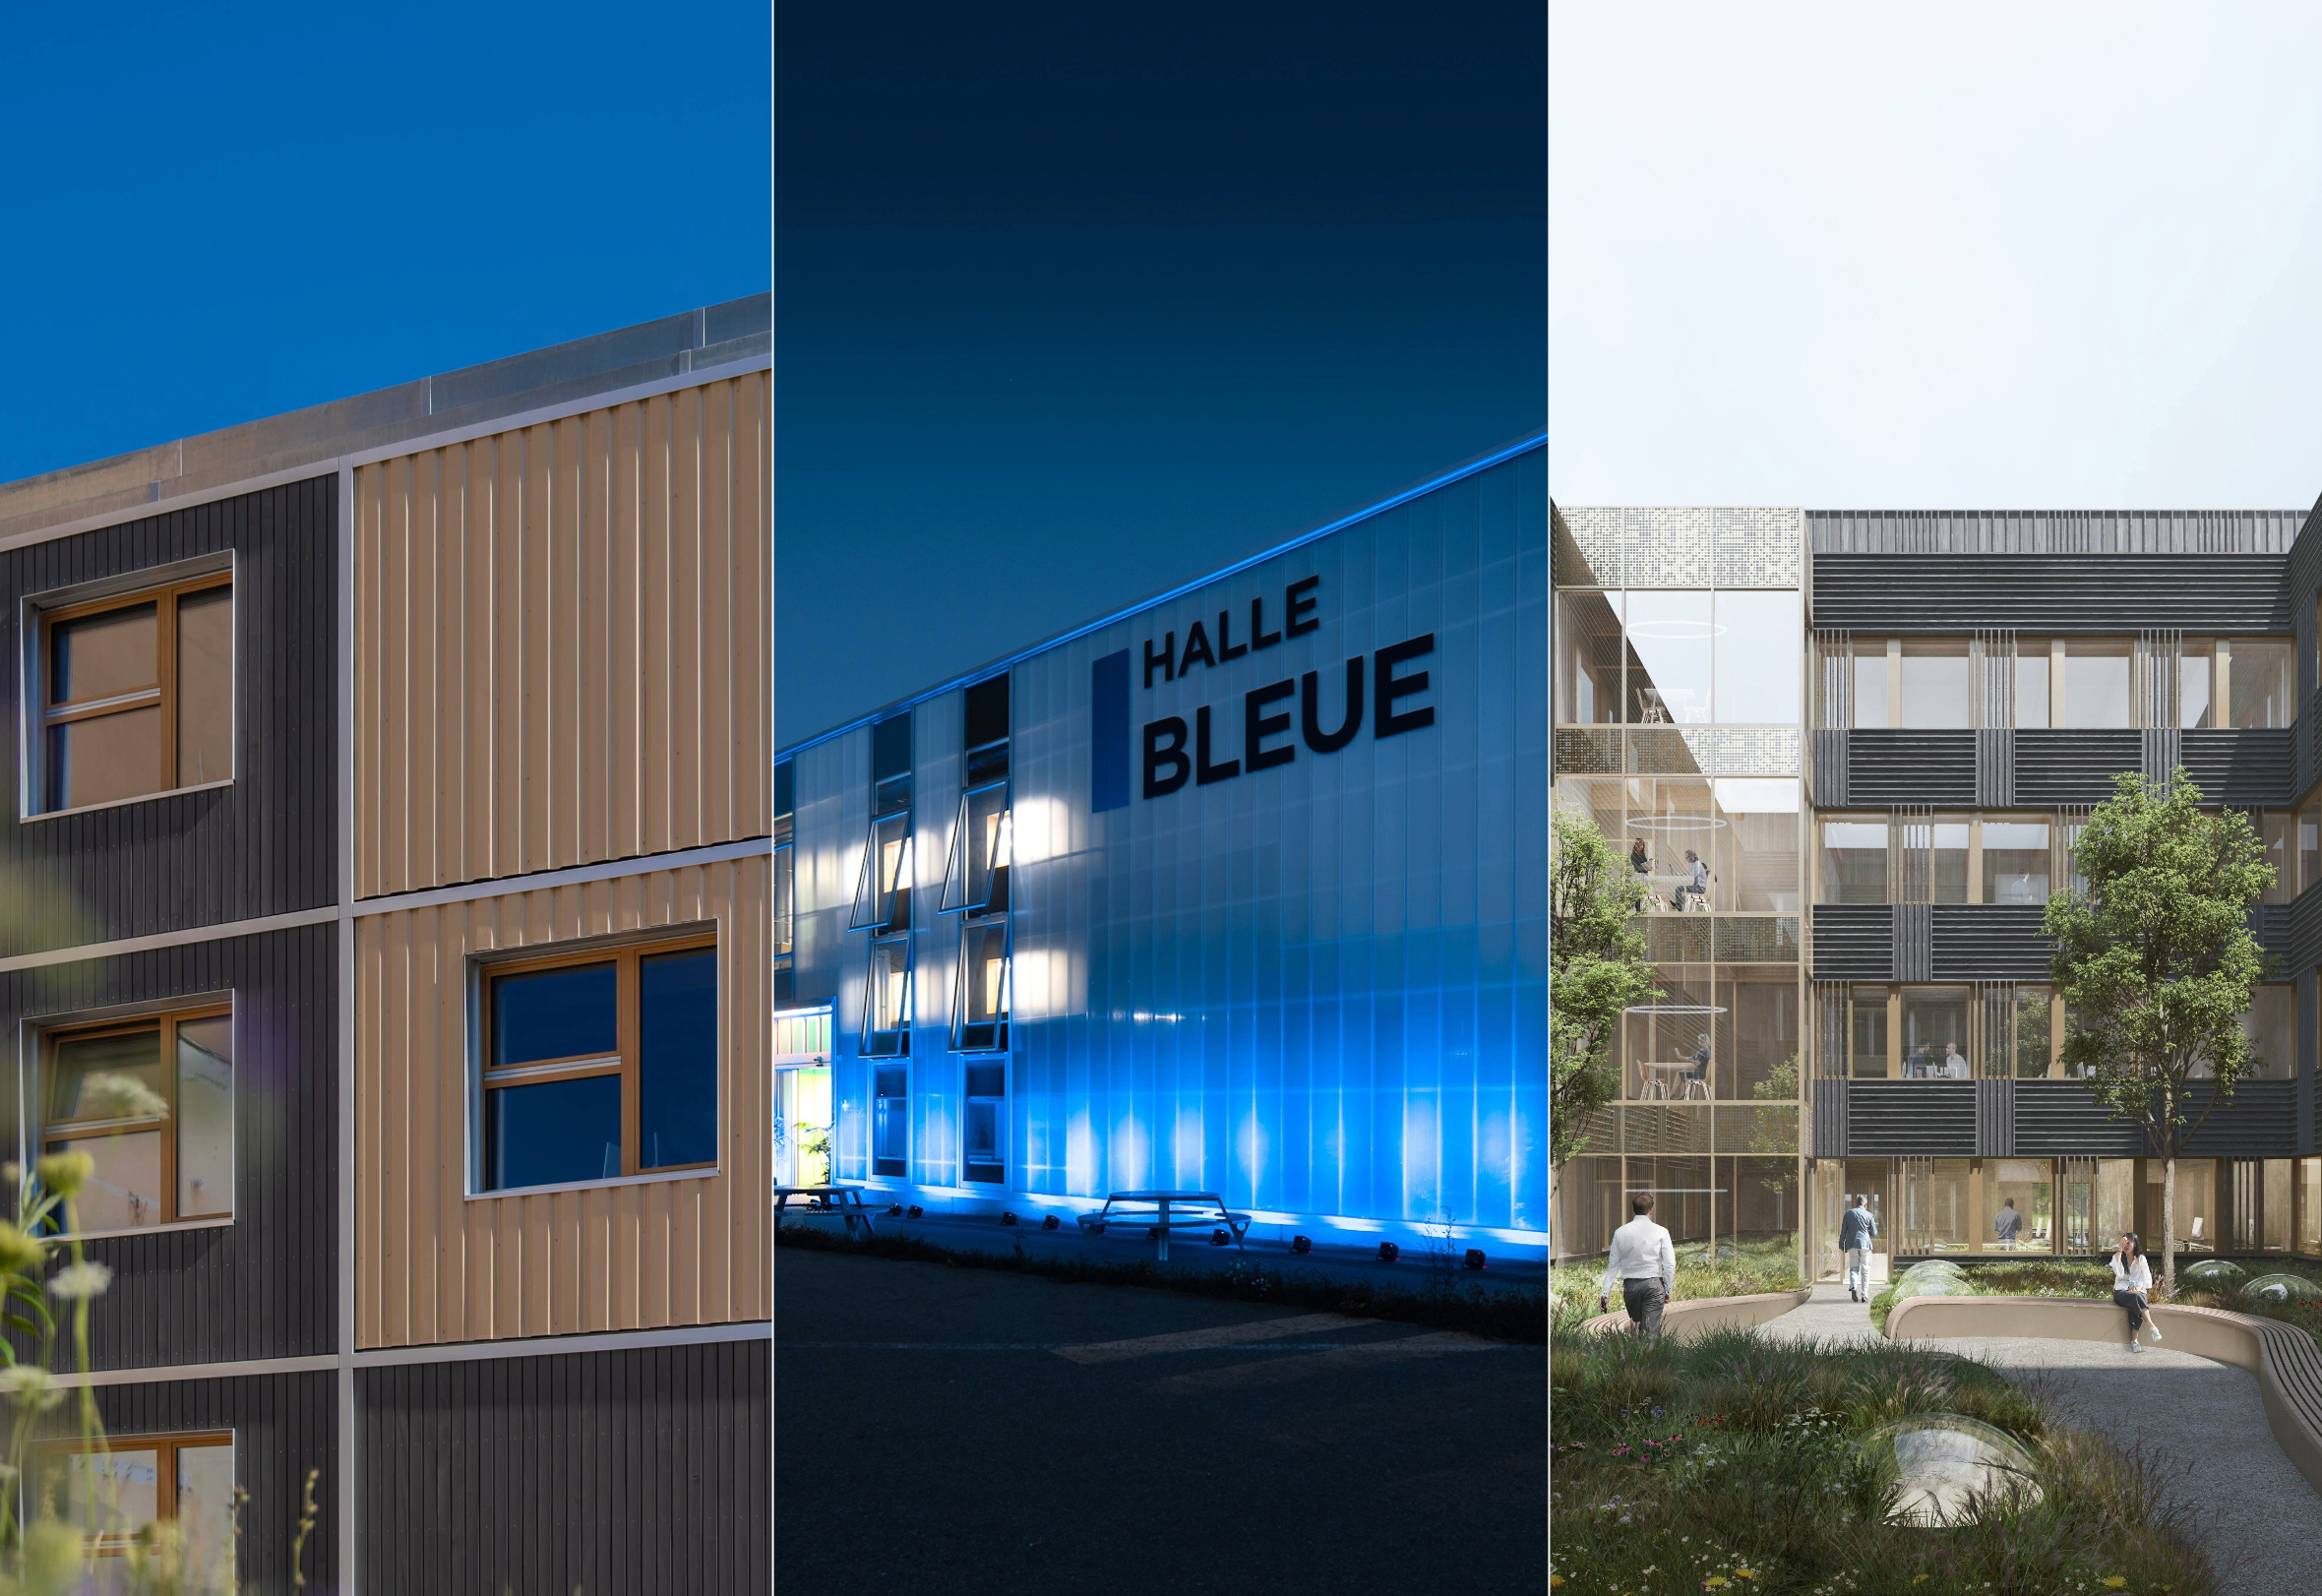 Positionné au centre du paysage historique de Fribourg, Bluefactory offre une fusion innovante d'héritage passé avec une vision orientée vers l'avenir. Servant d'épine dorsale au site, son engagement envers la durabilité façonne un quartier d'innovation à faible émission de carbone qui répond aux besoins environnementaux globaux.